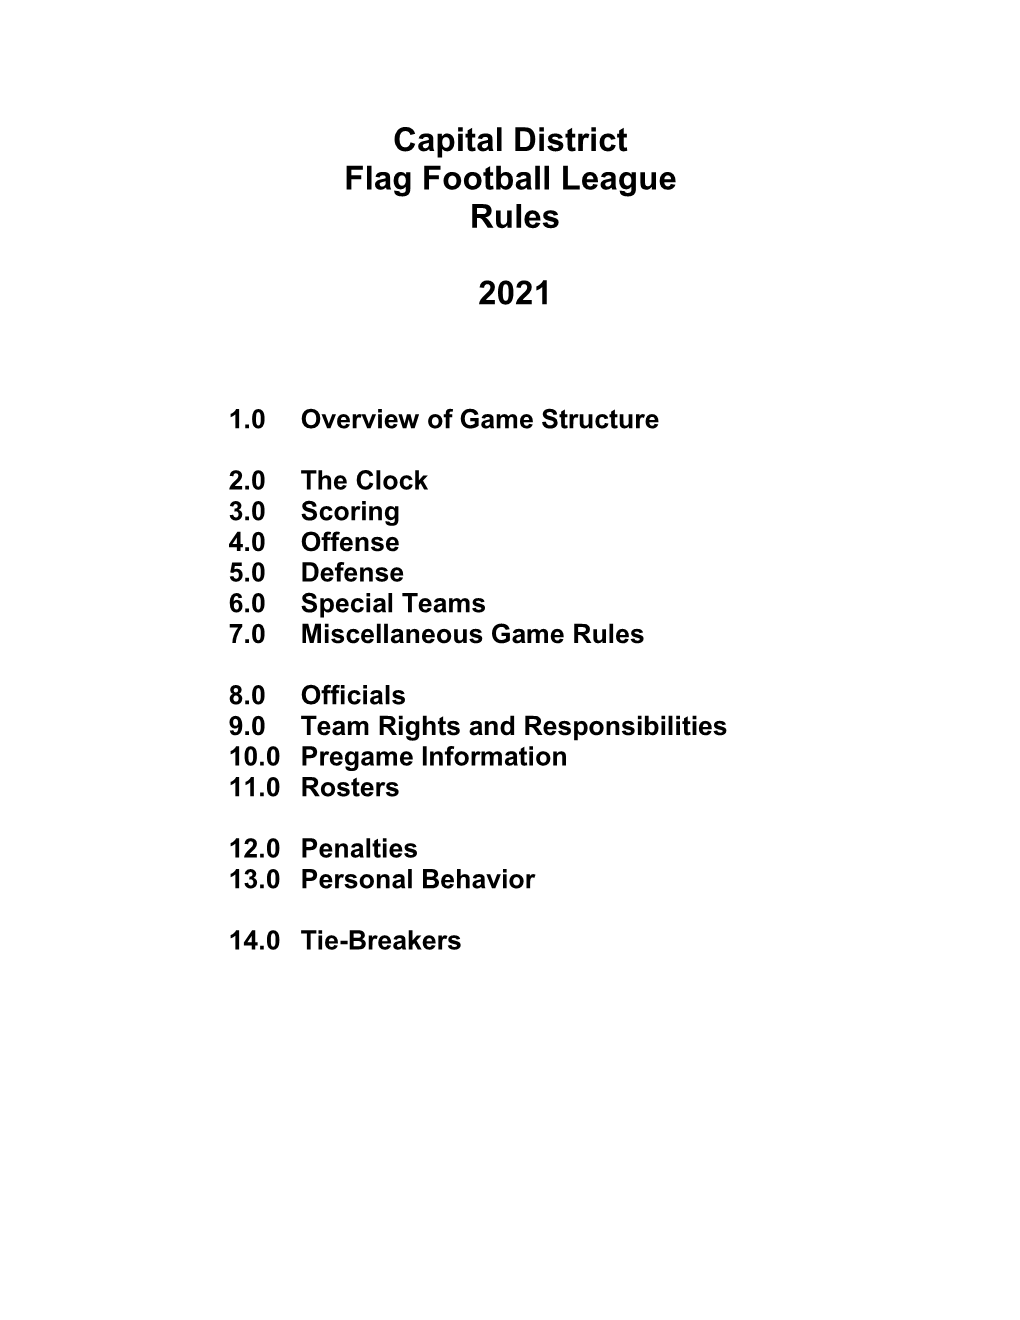 Capital District Flag Football League Rules 2021